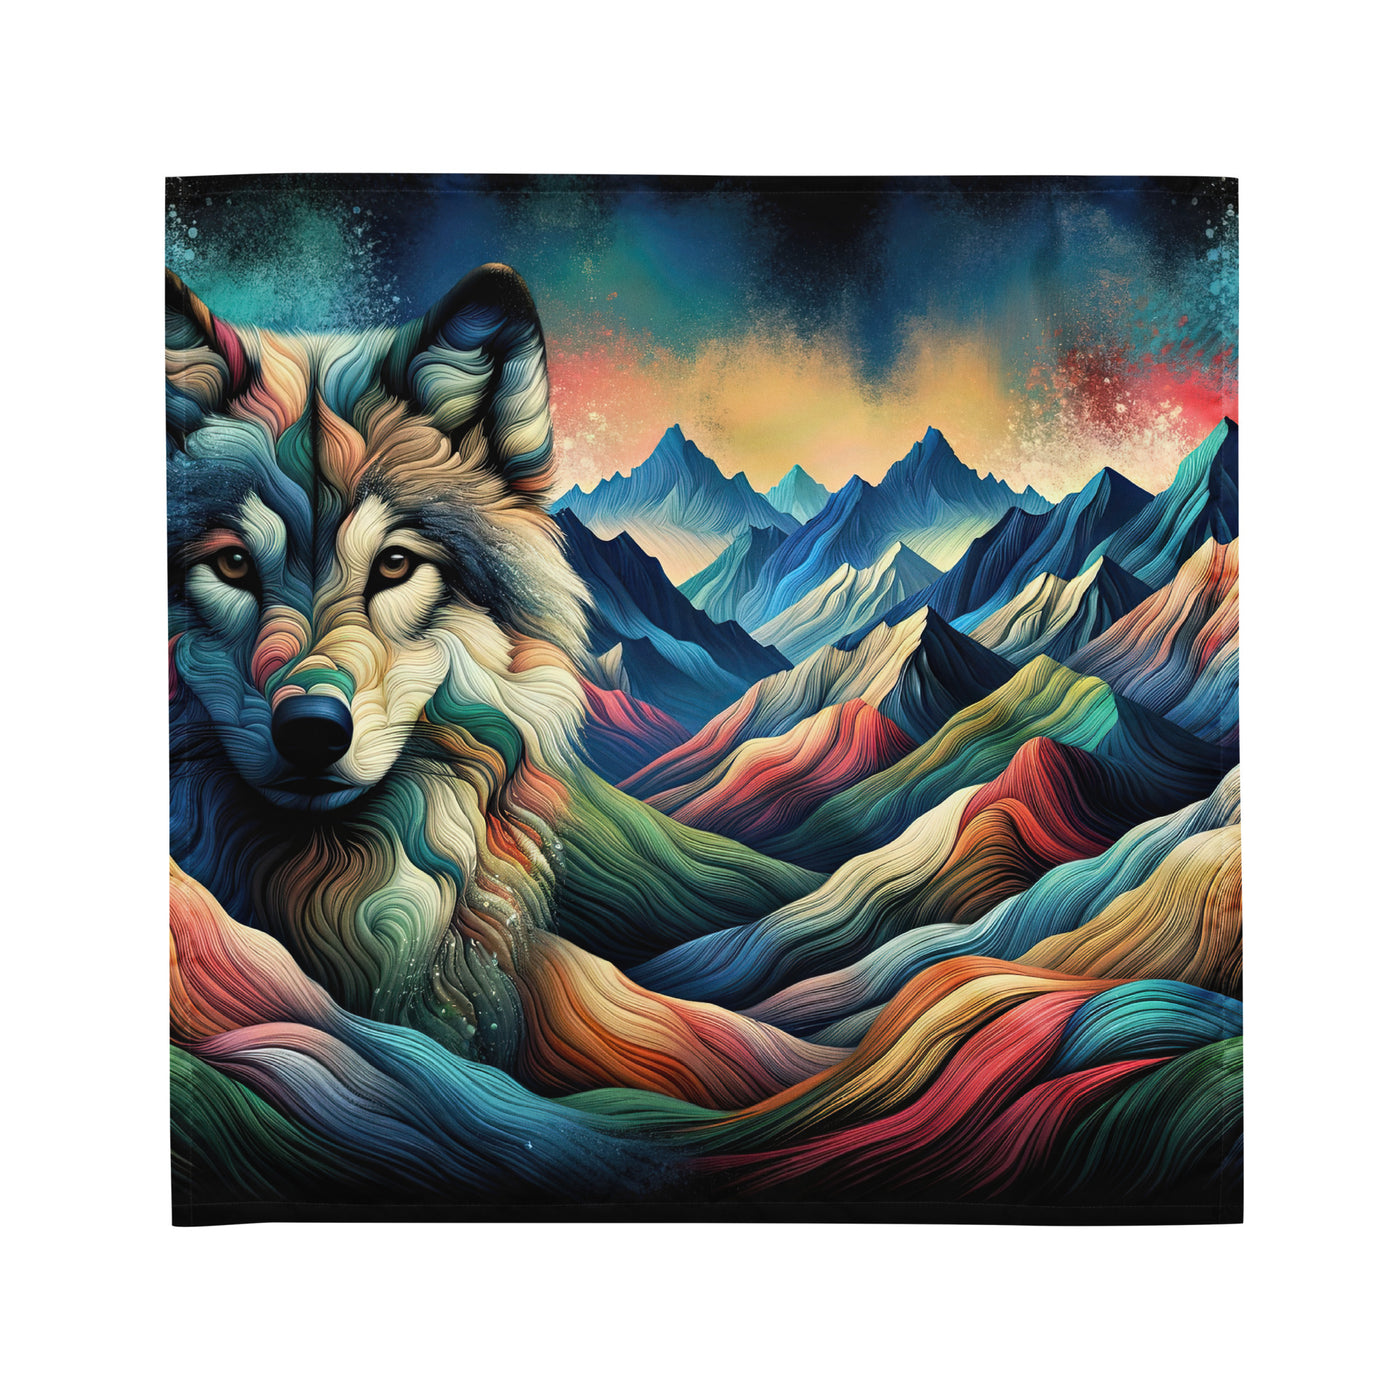 Traumhaftes Alpenpanorama mit Wolf in wechselnden Farben und Mustern (AN) - Bandana (All-Over Print) xxx yyy zzz M